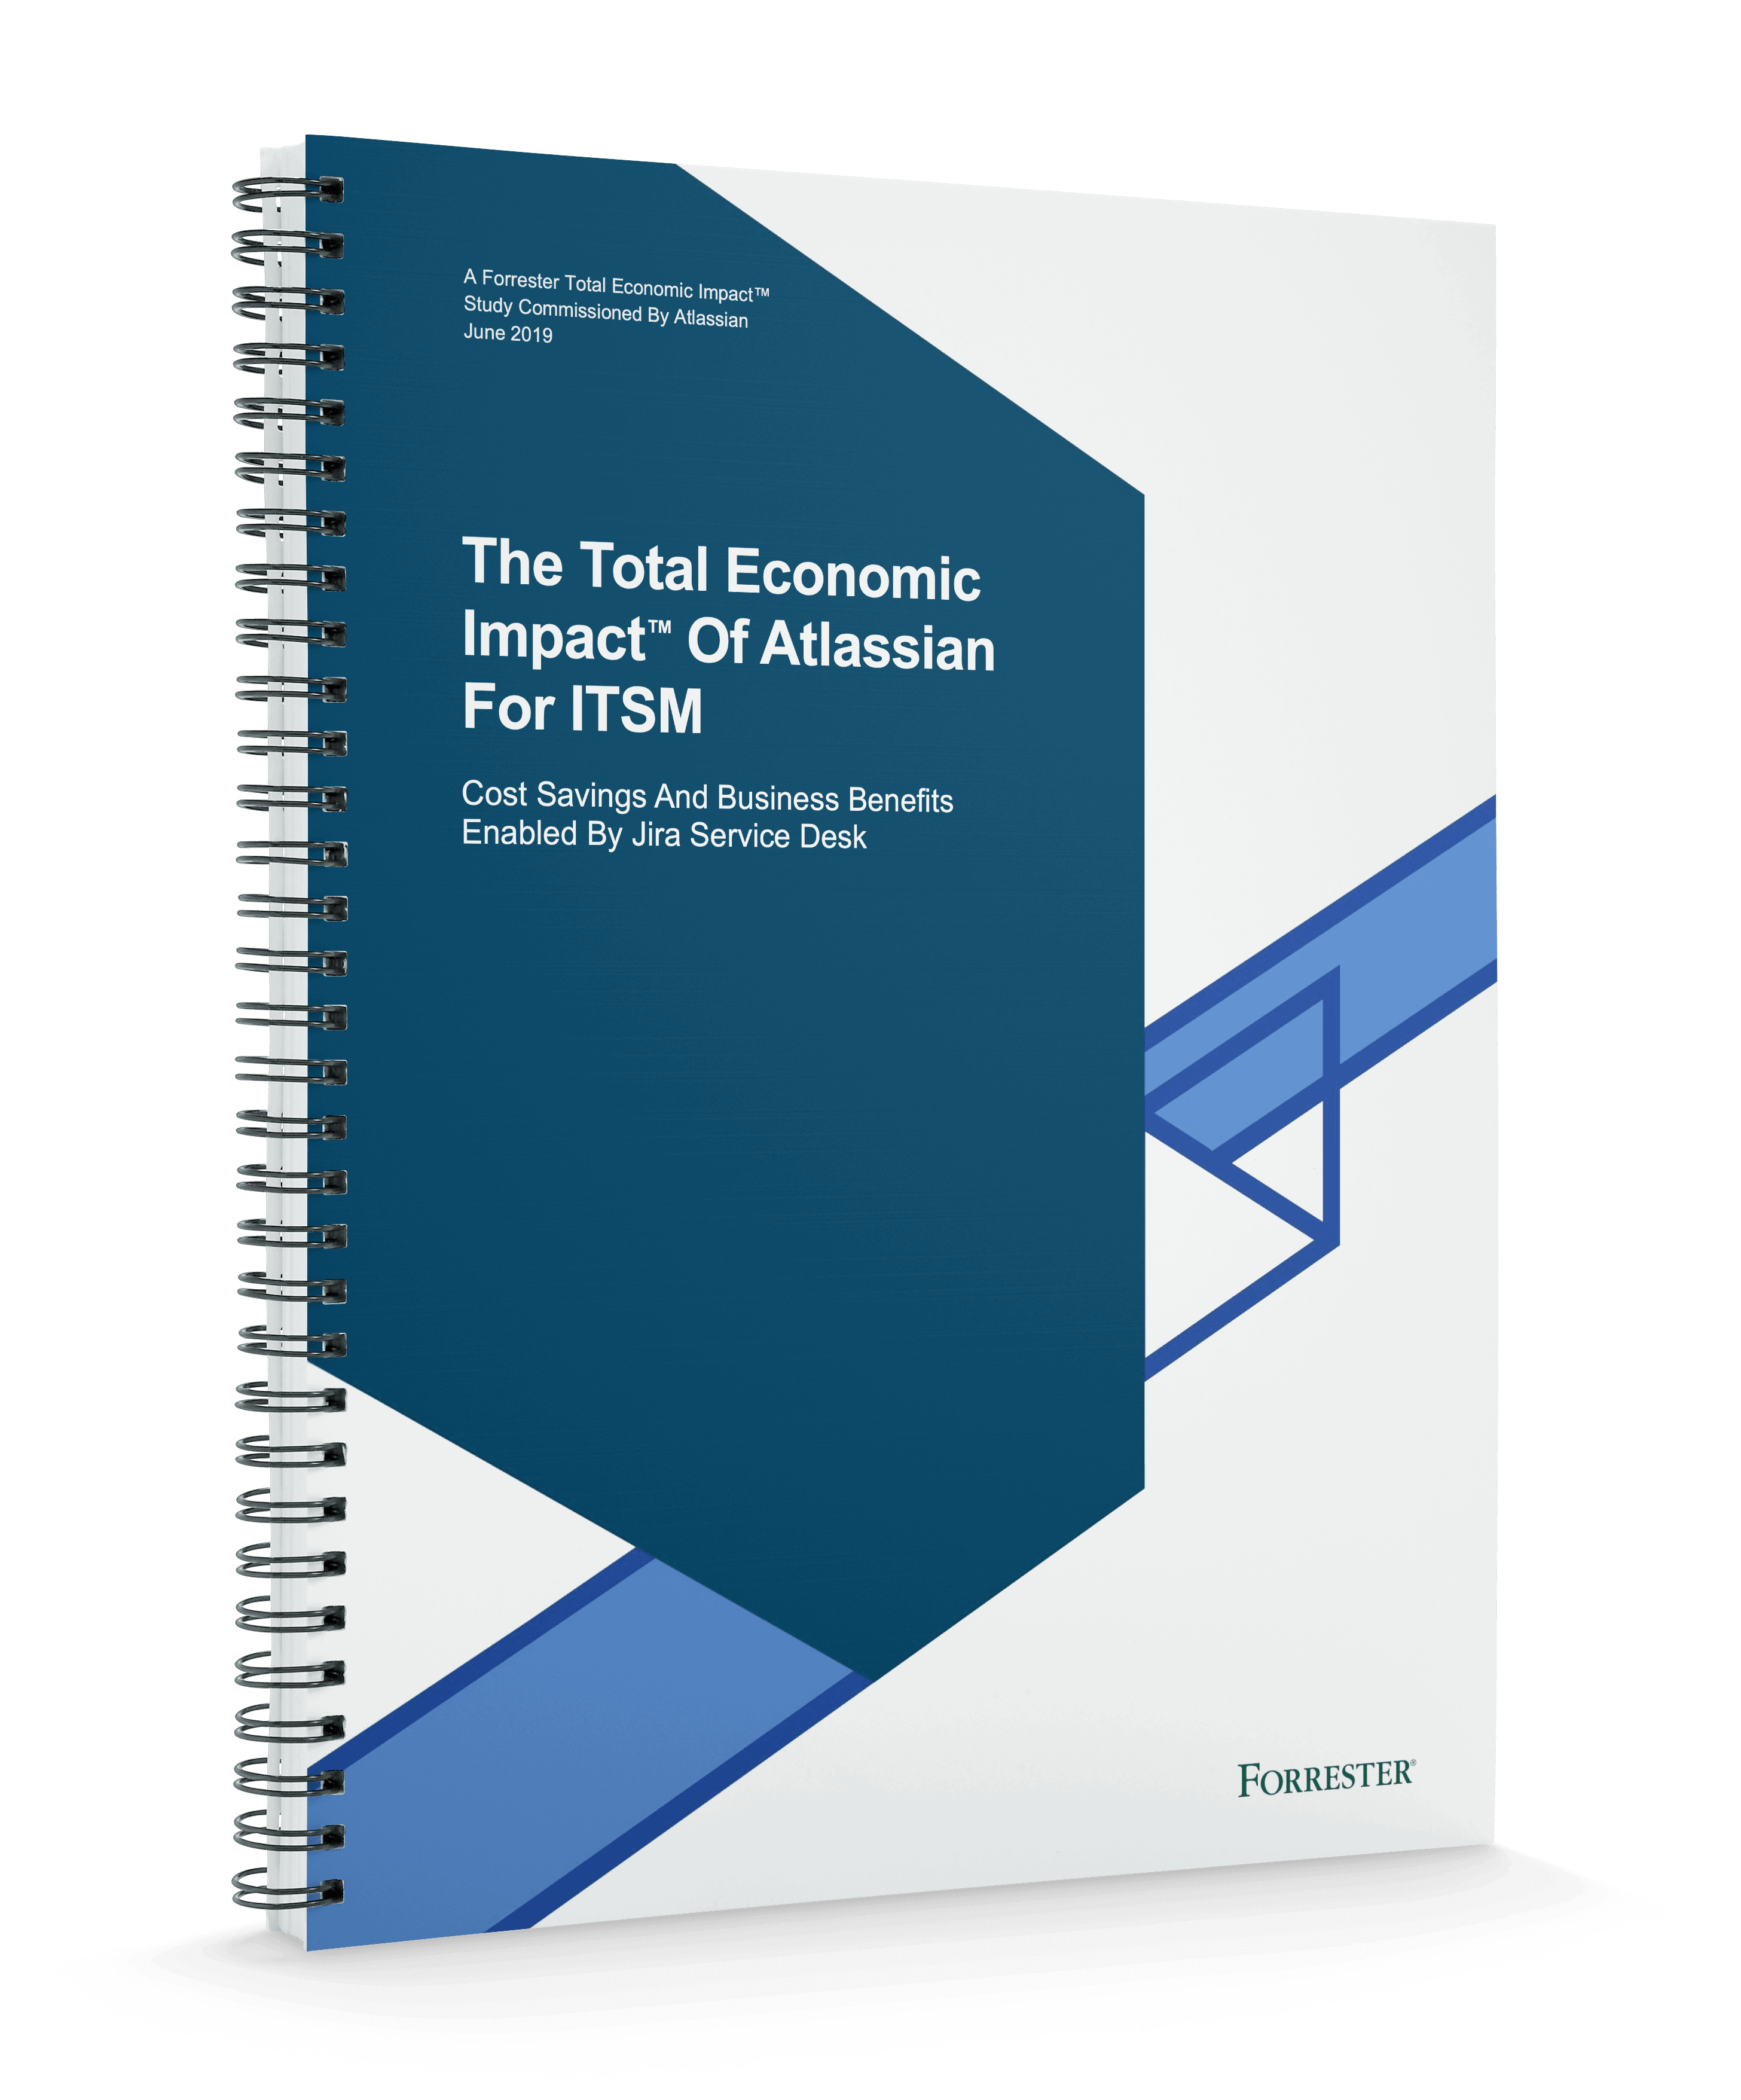 Portada del Total Economic Impact™ de Atlassian para ITSM